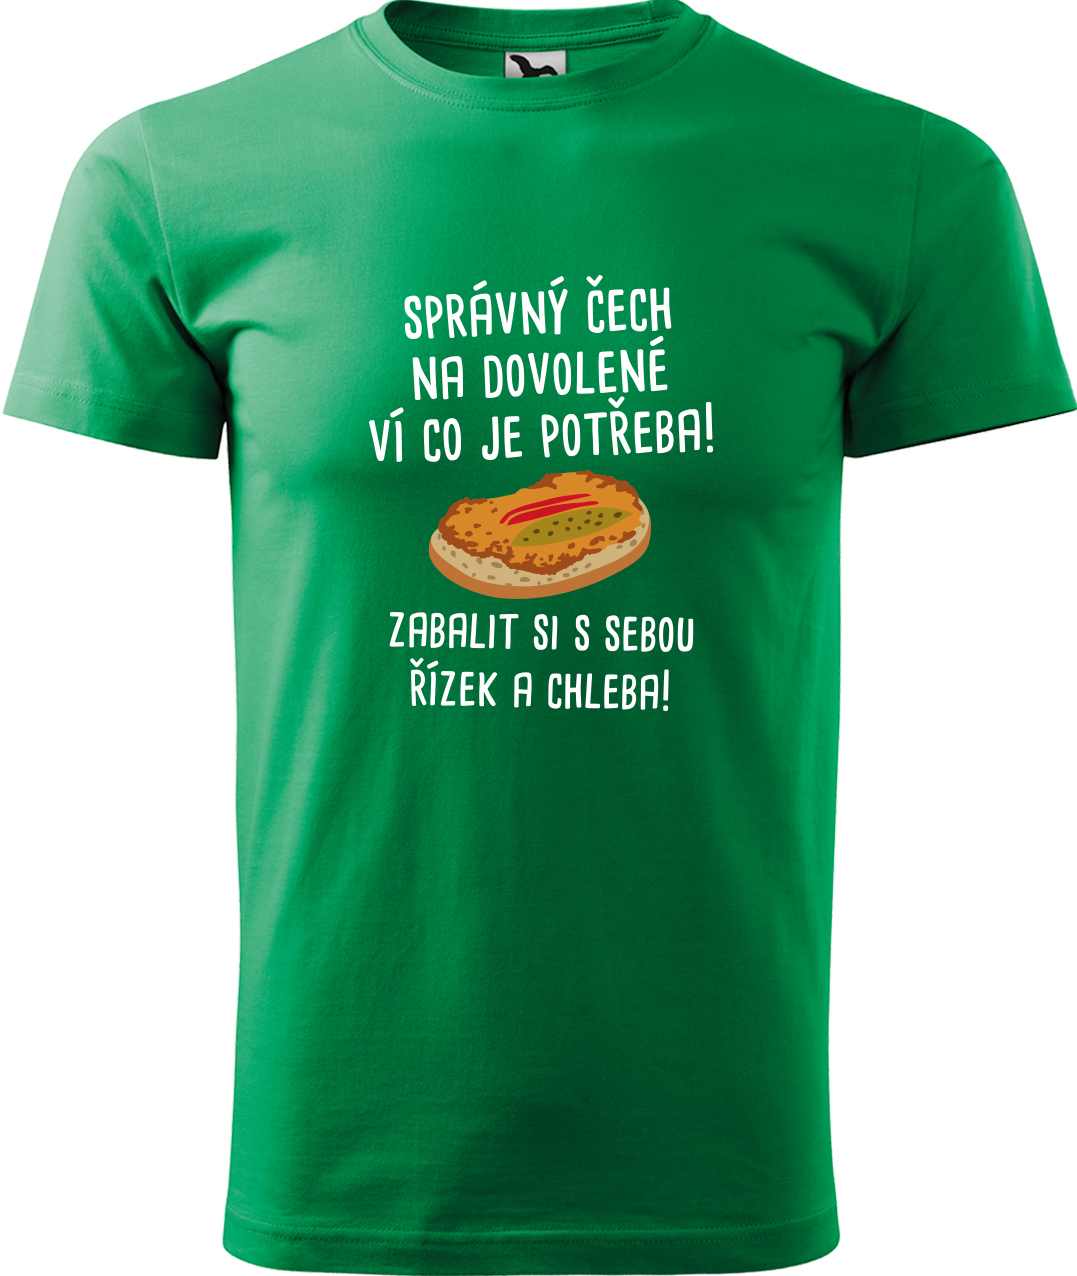 Pánské cestovatelské tričko - Správný Čech na dovolené, ví co je potřeba! Velikost: S, Barva: Středně zelená (16), Střih: pánský